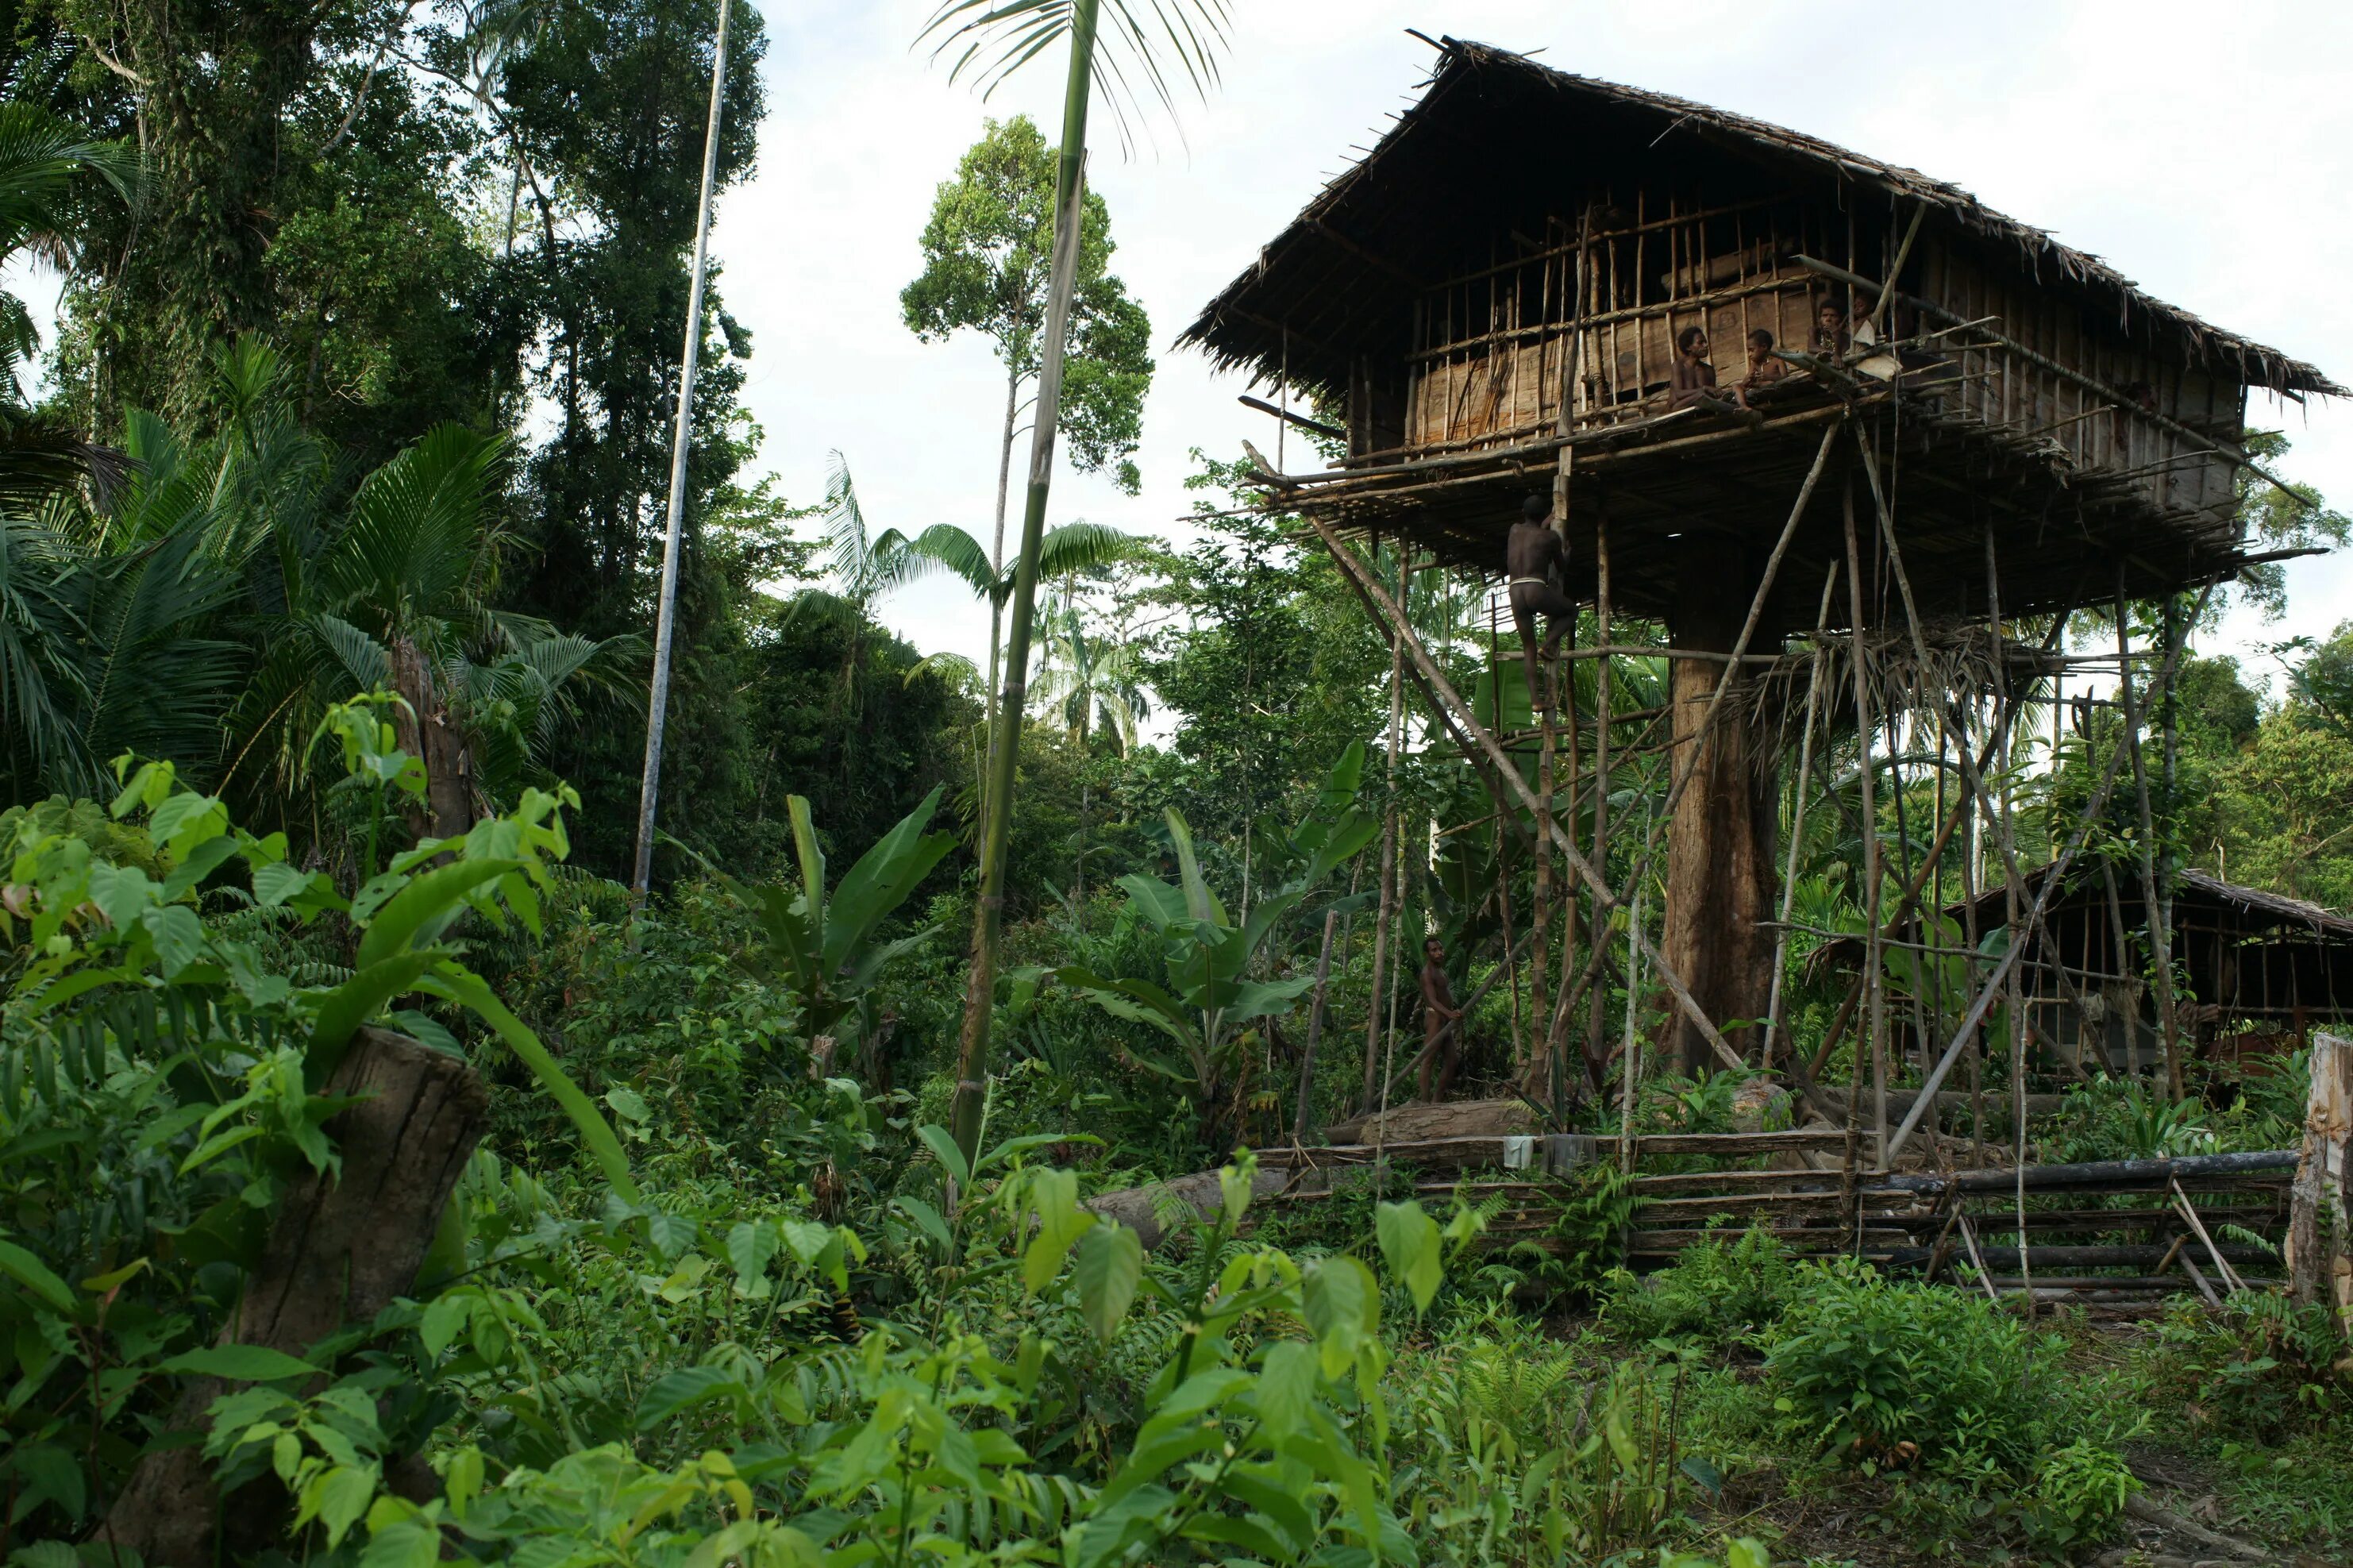 Люди живущие в экваториальном климате имеют уплощенный. Племя КОРОВАИ Папуа новая Гвинея. Племя КОРОВАИ Папуа новая Гвинея жилища на деревьях. Хижины новой Гвинеи. Жилища Короваев новая Гвинея.